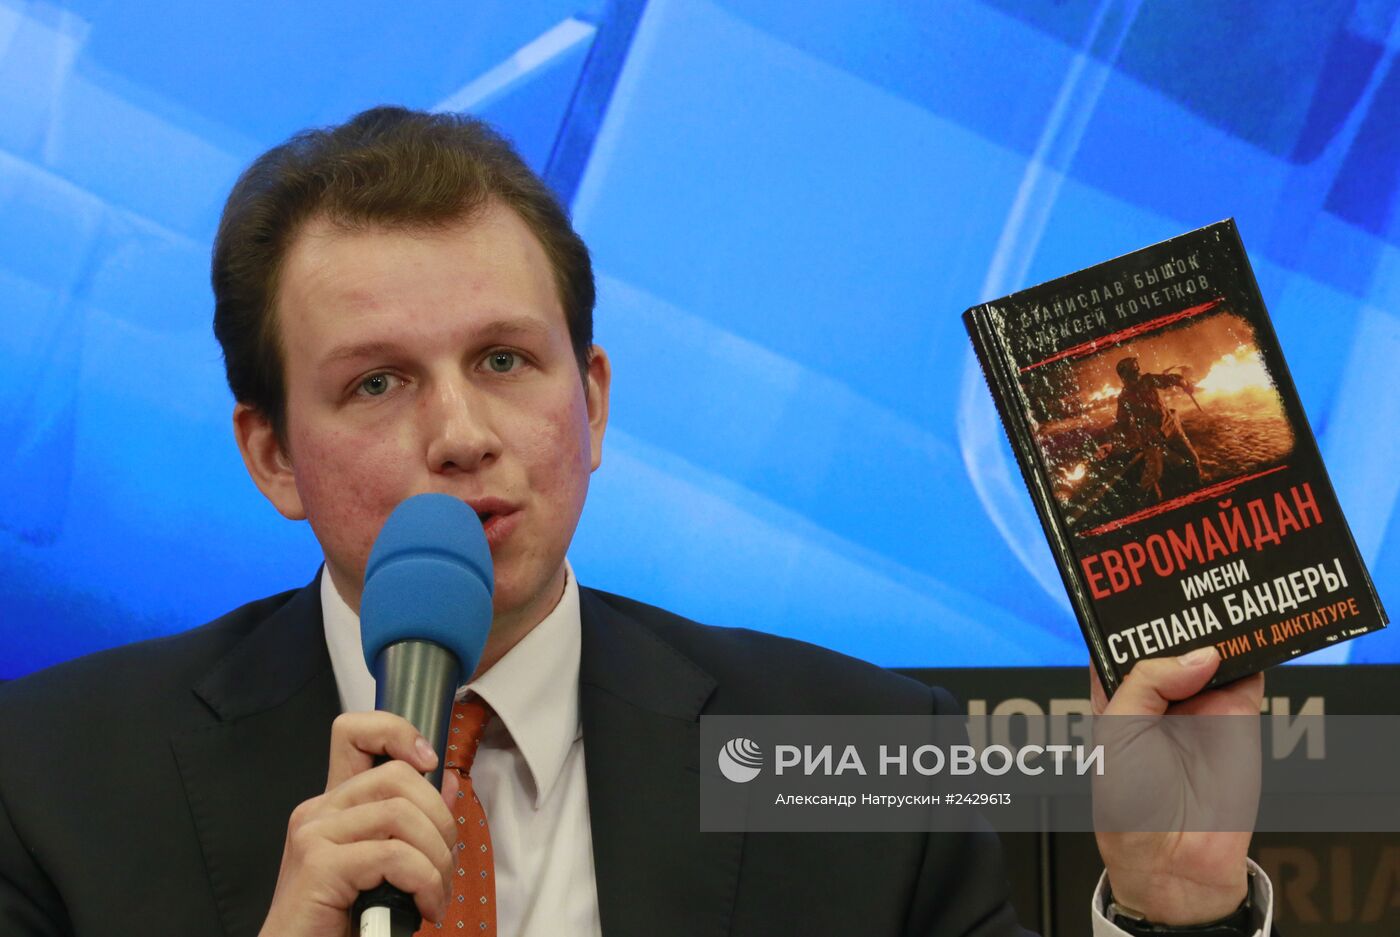 П/к "Массовые убийства на Украине: общественное расследование"